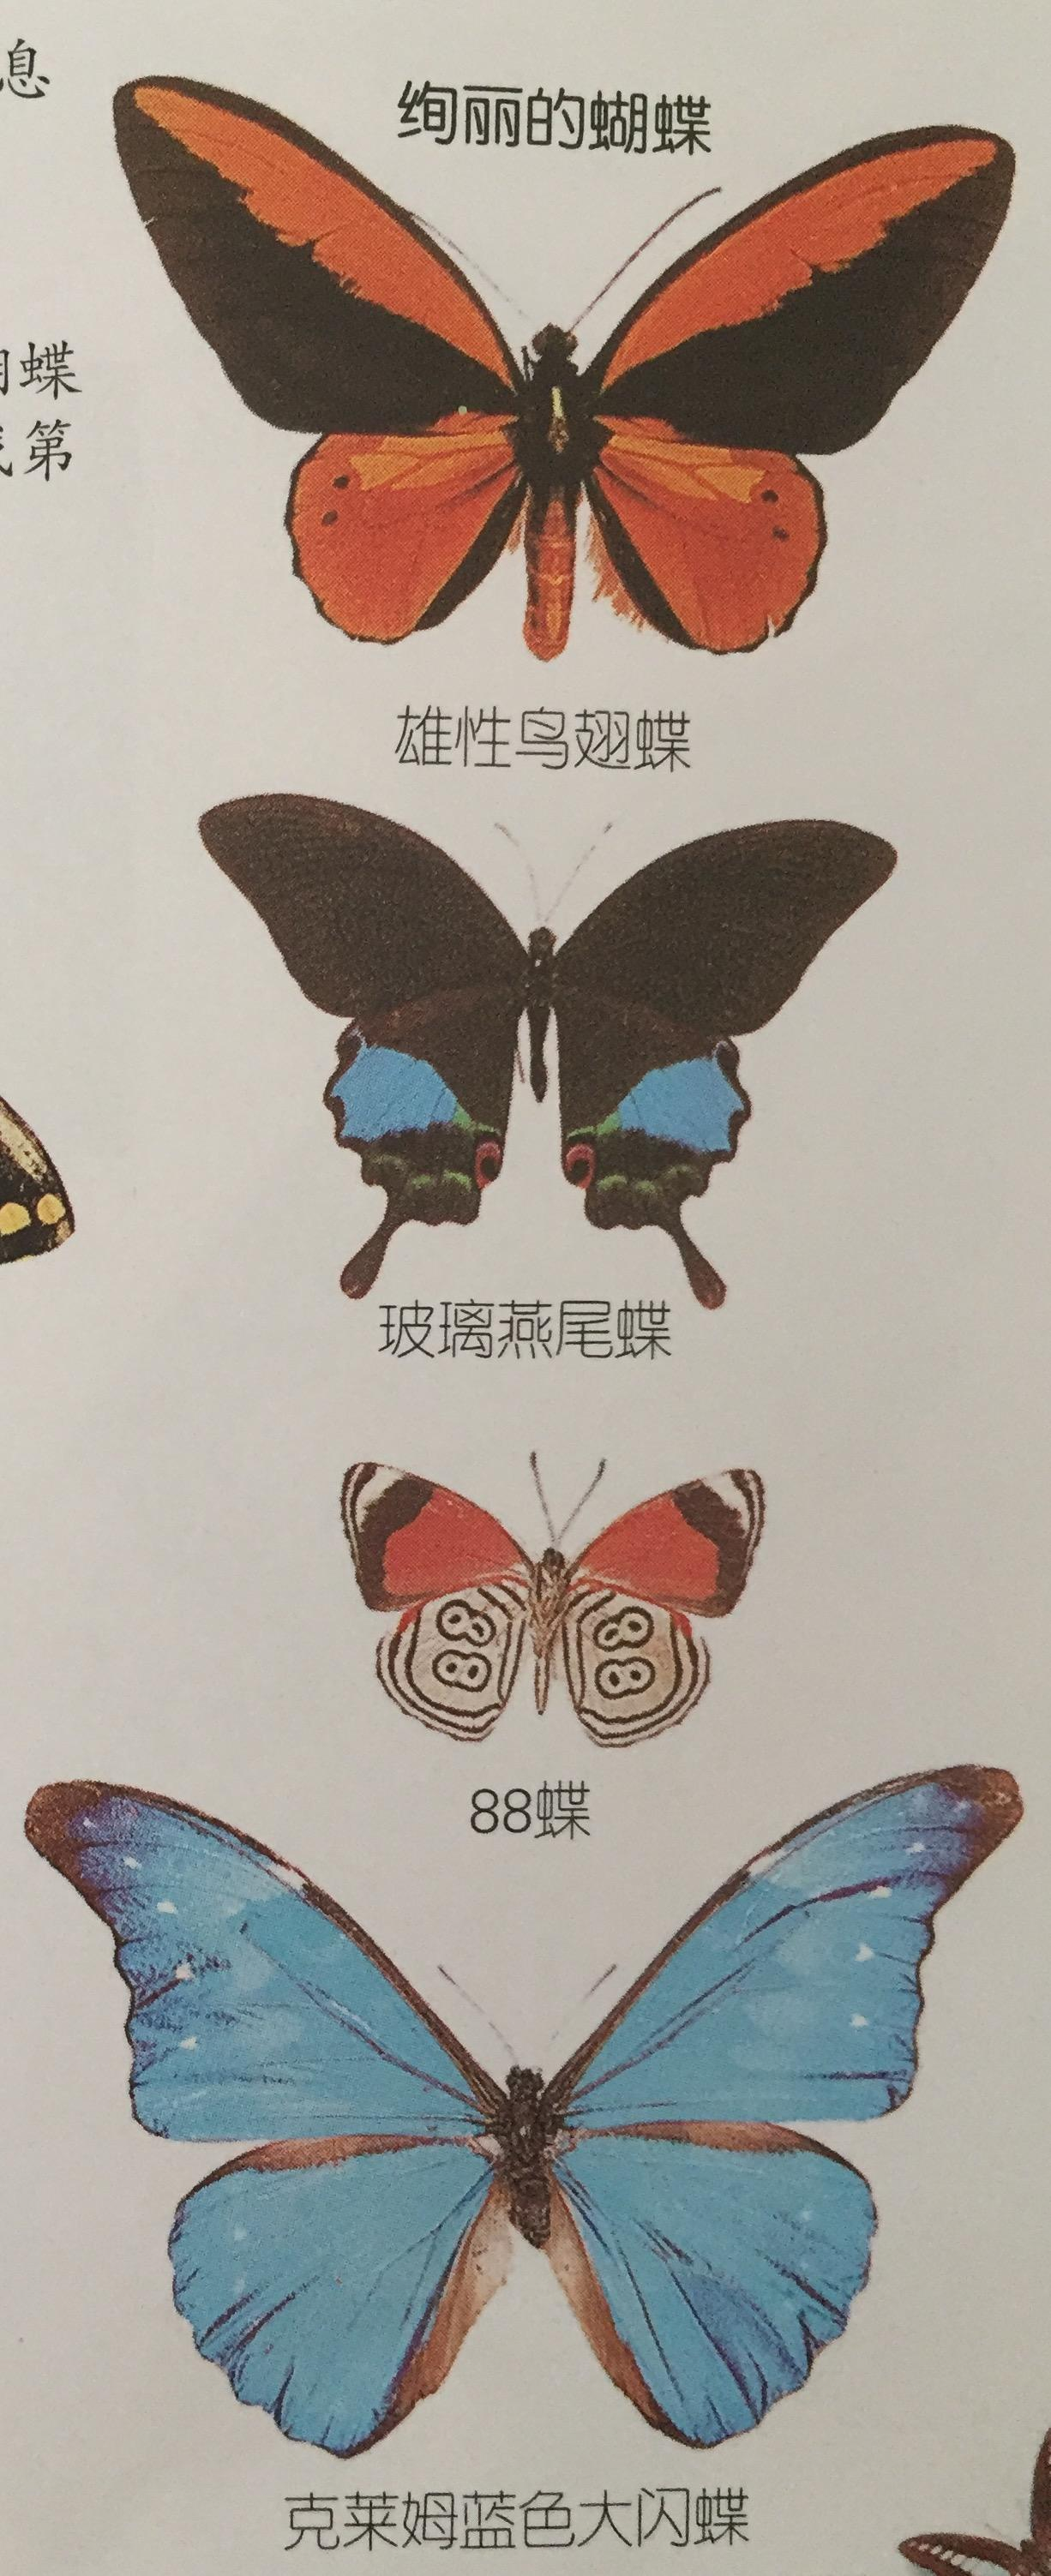 燕尾蝶百科图片